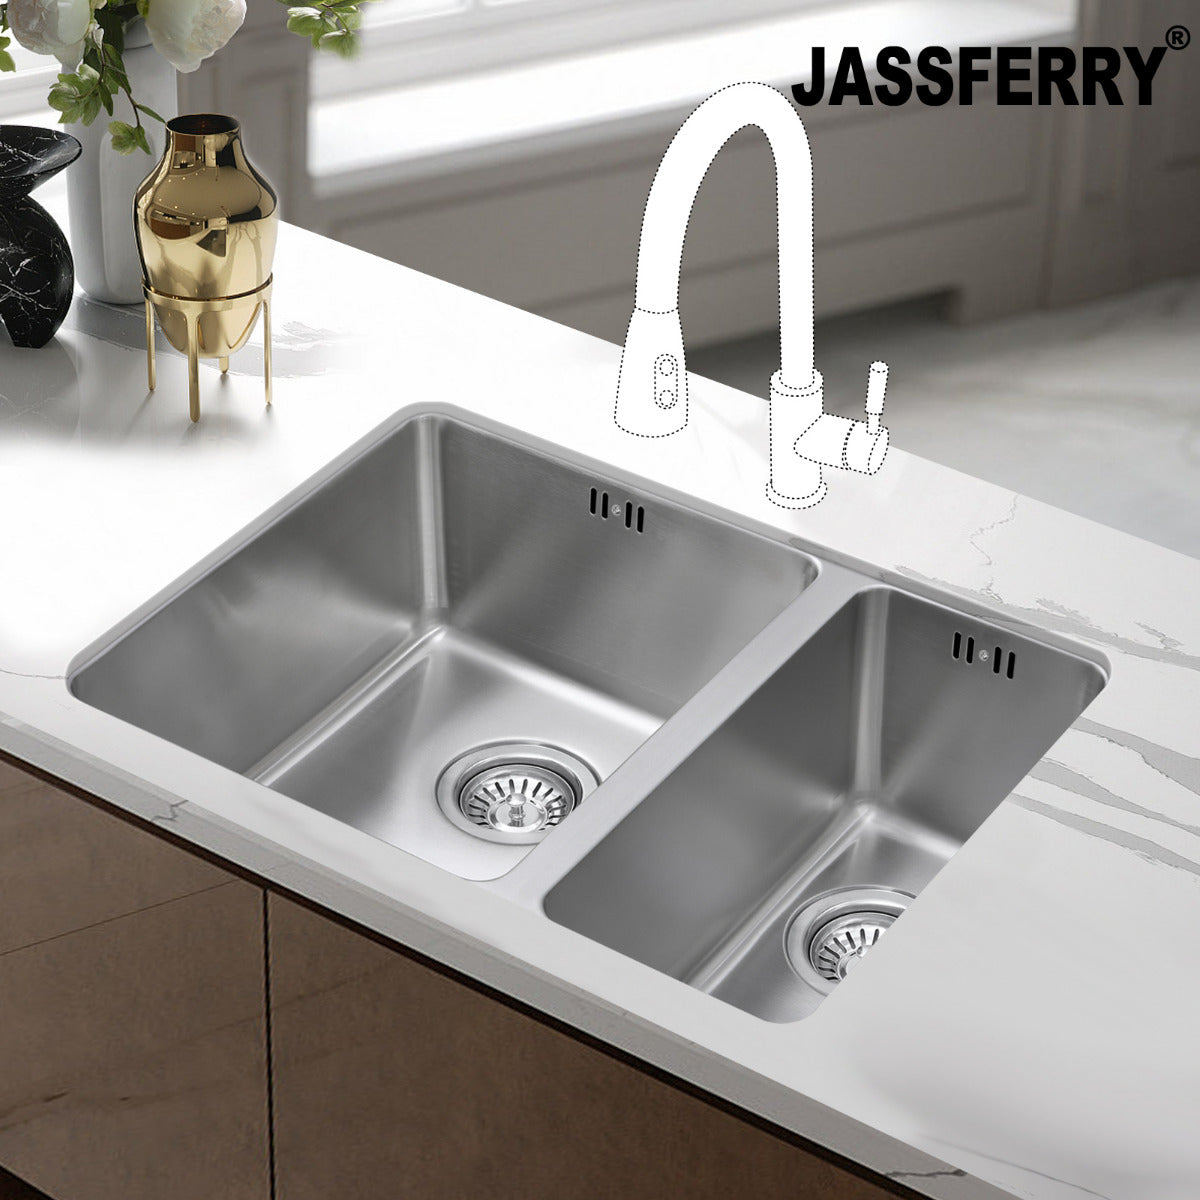 JassferryJASSFERRY Undermount Stainless Steel Kitchen Sink 1.5 Bowl Righthand Half BowlKitchen Sinks